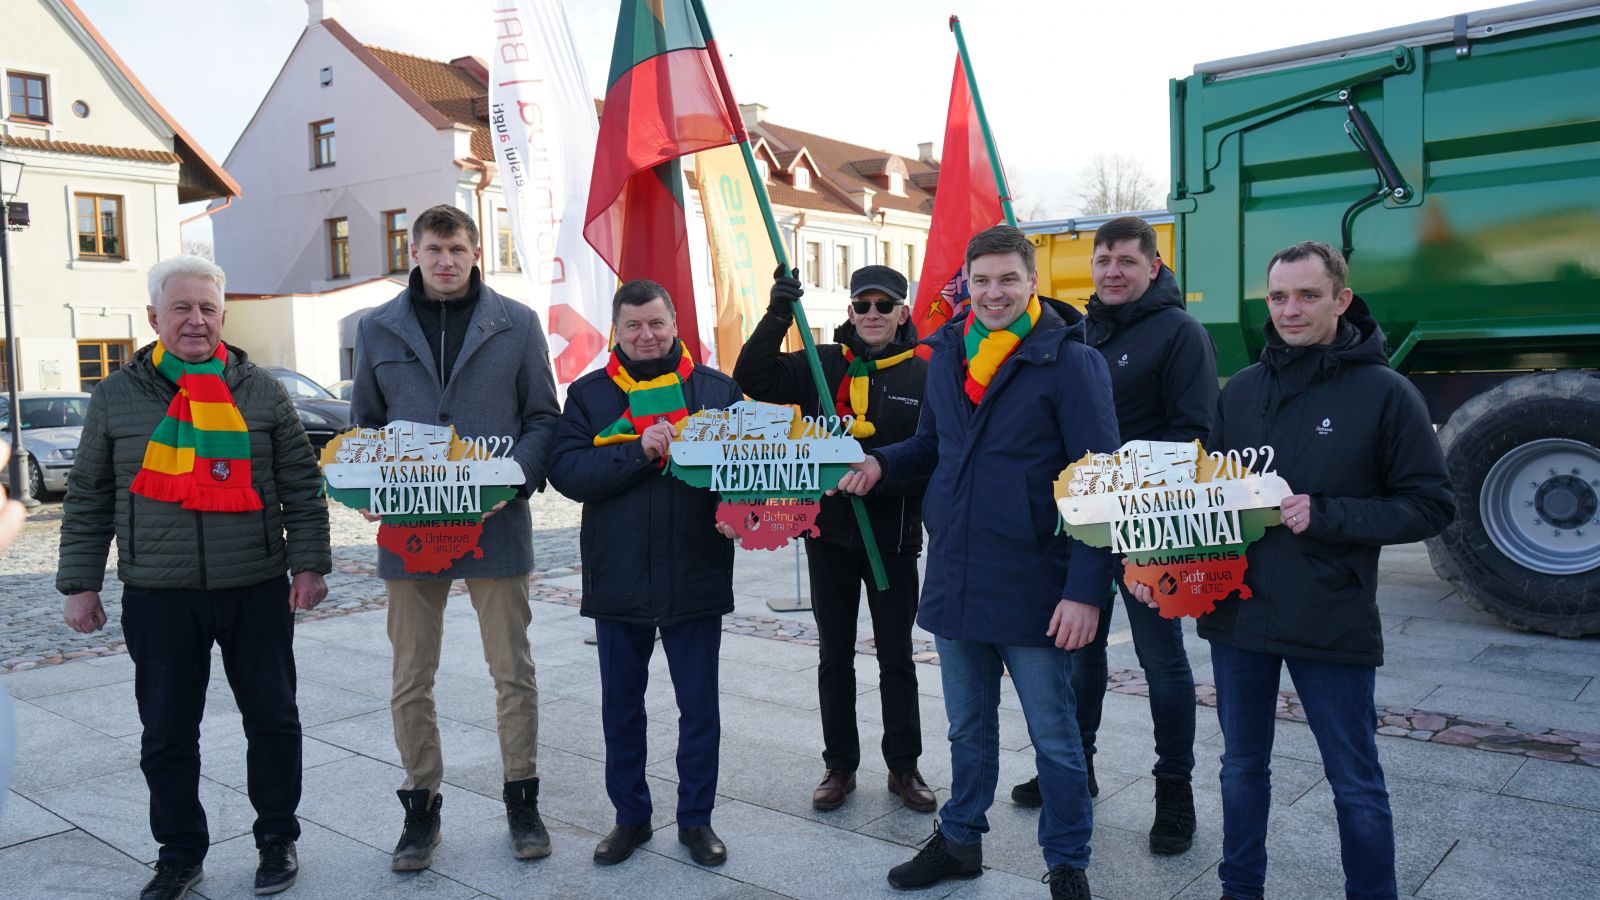 Neįprastas pasveikinimas su Lietuvos valstybės atkūrimo diena: dvi Kėdainių krašto įmonės trispalve technika atvežė linkėjimus miestui